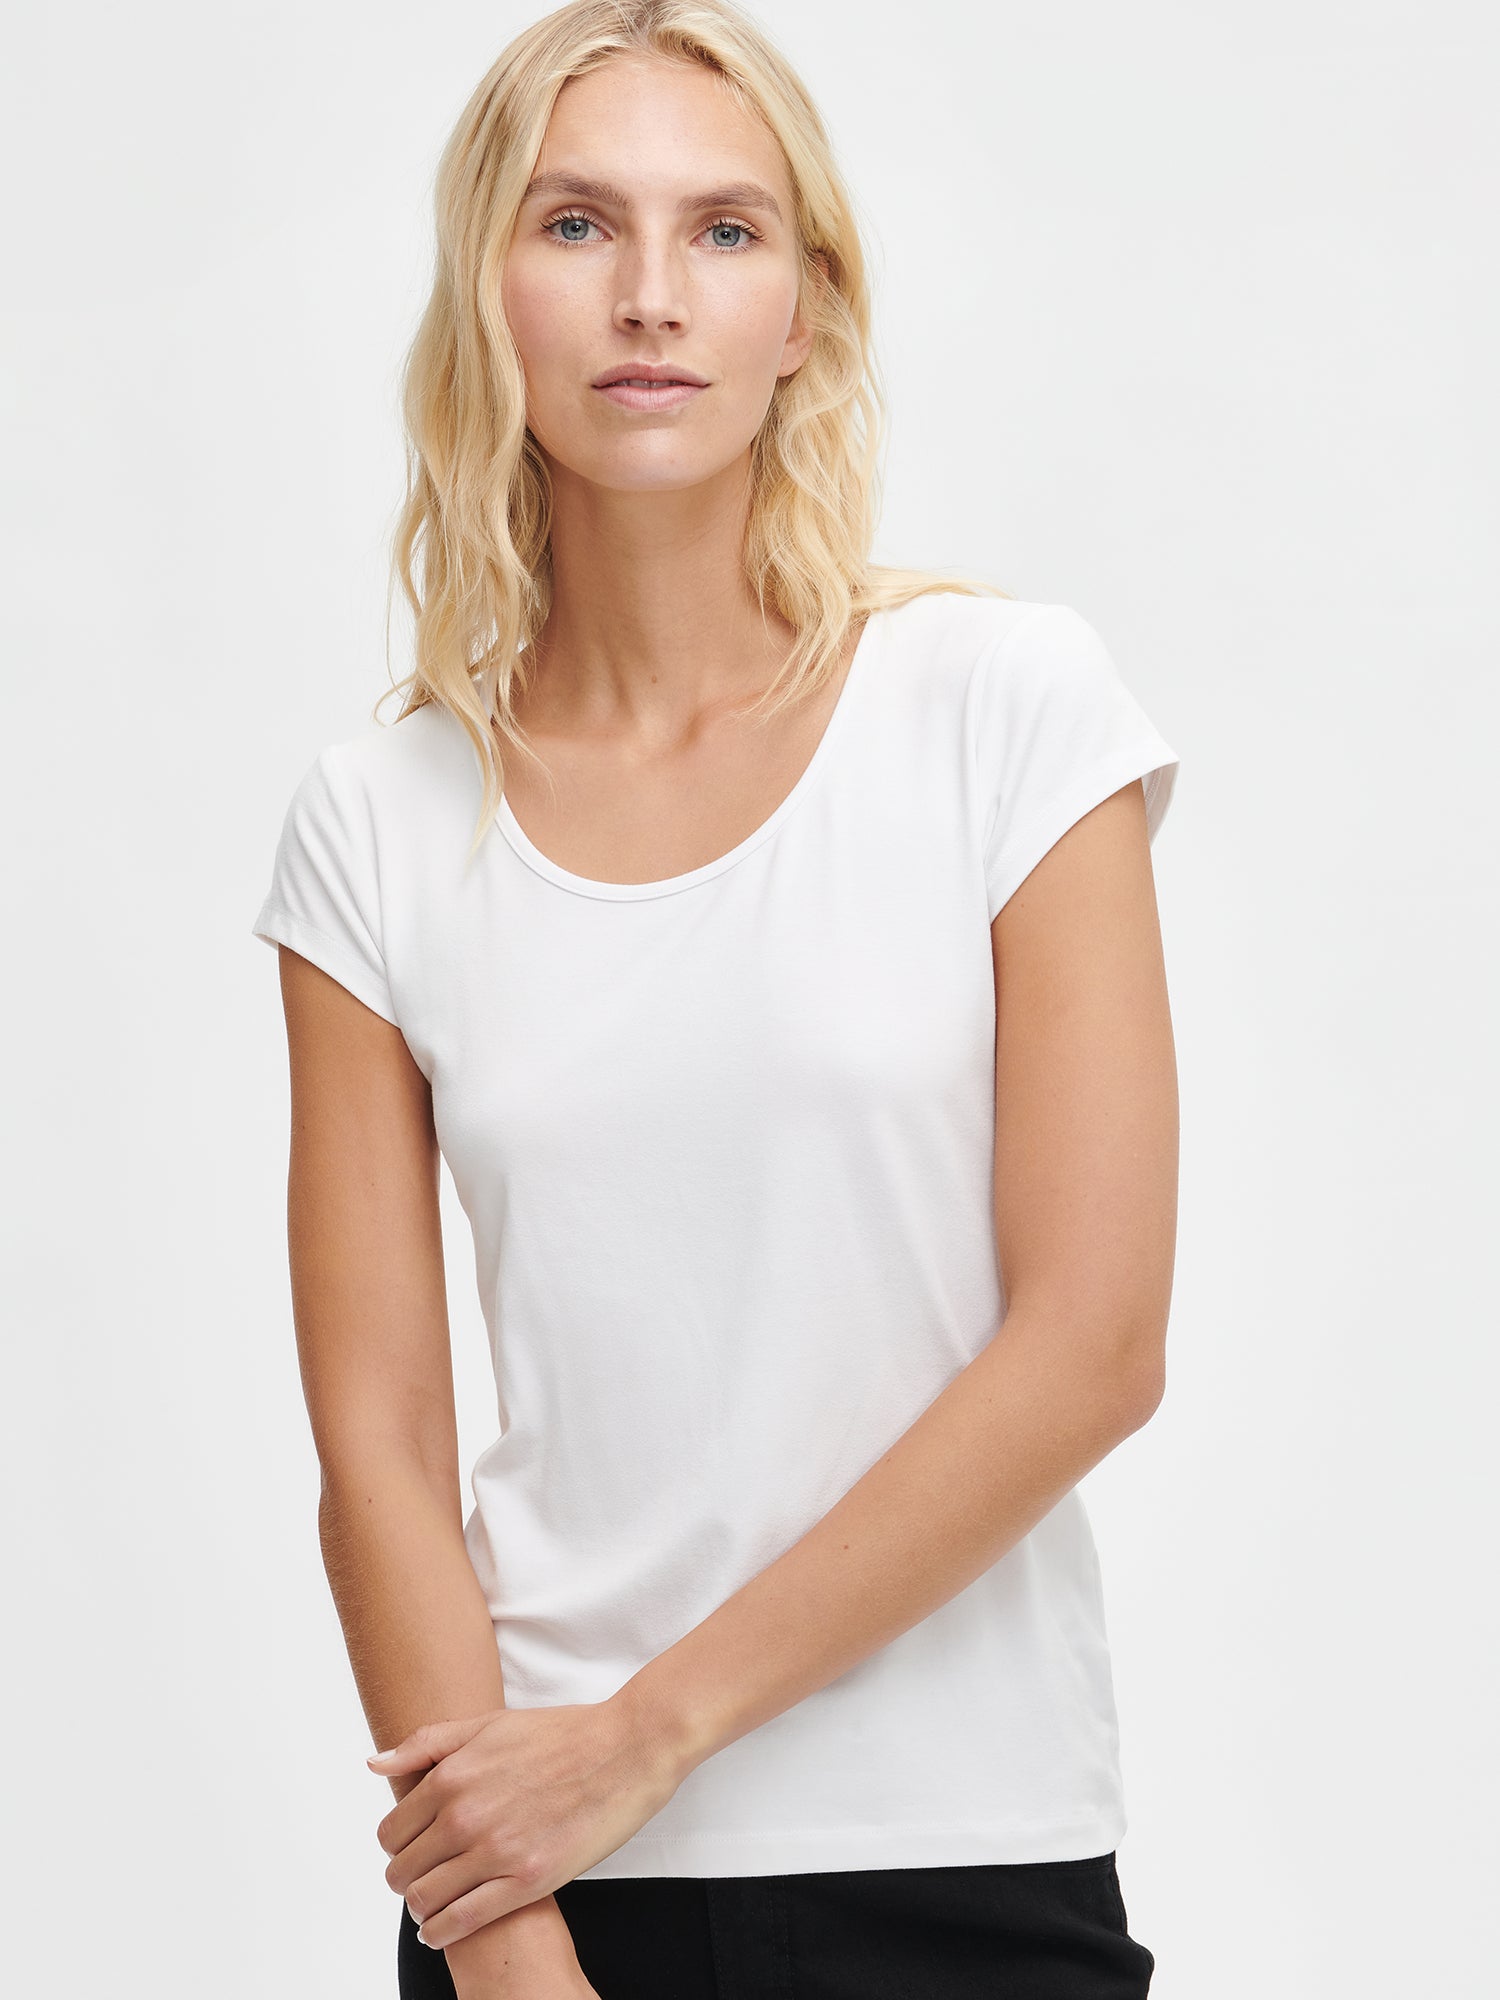 Naisten yksivärinen valkoinen Viskoosi Basic t-paita pyöreällä pääntiellä. 